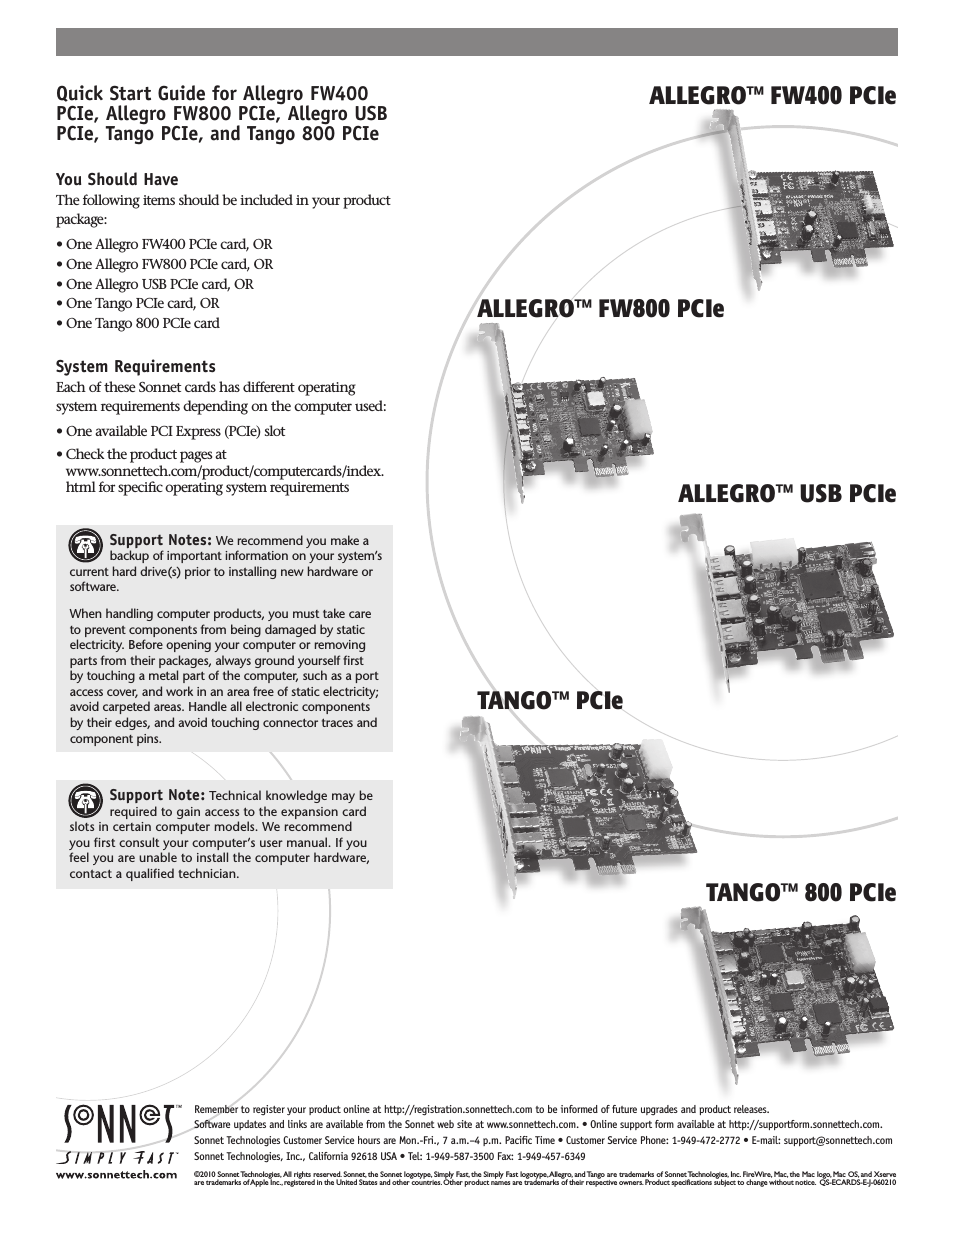 Allegro FW400 PCIe